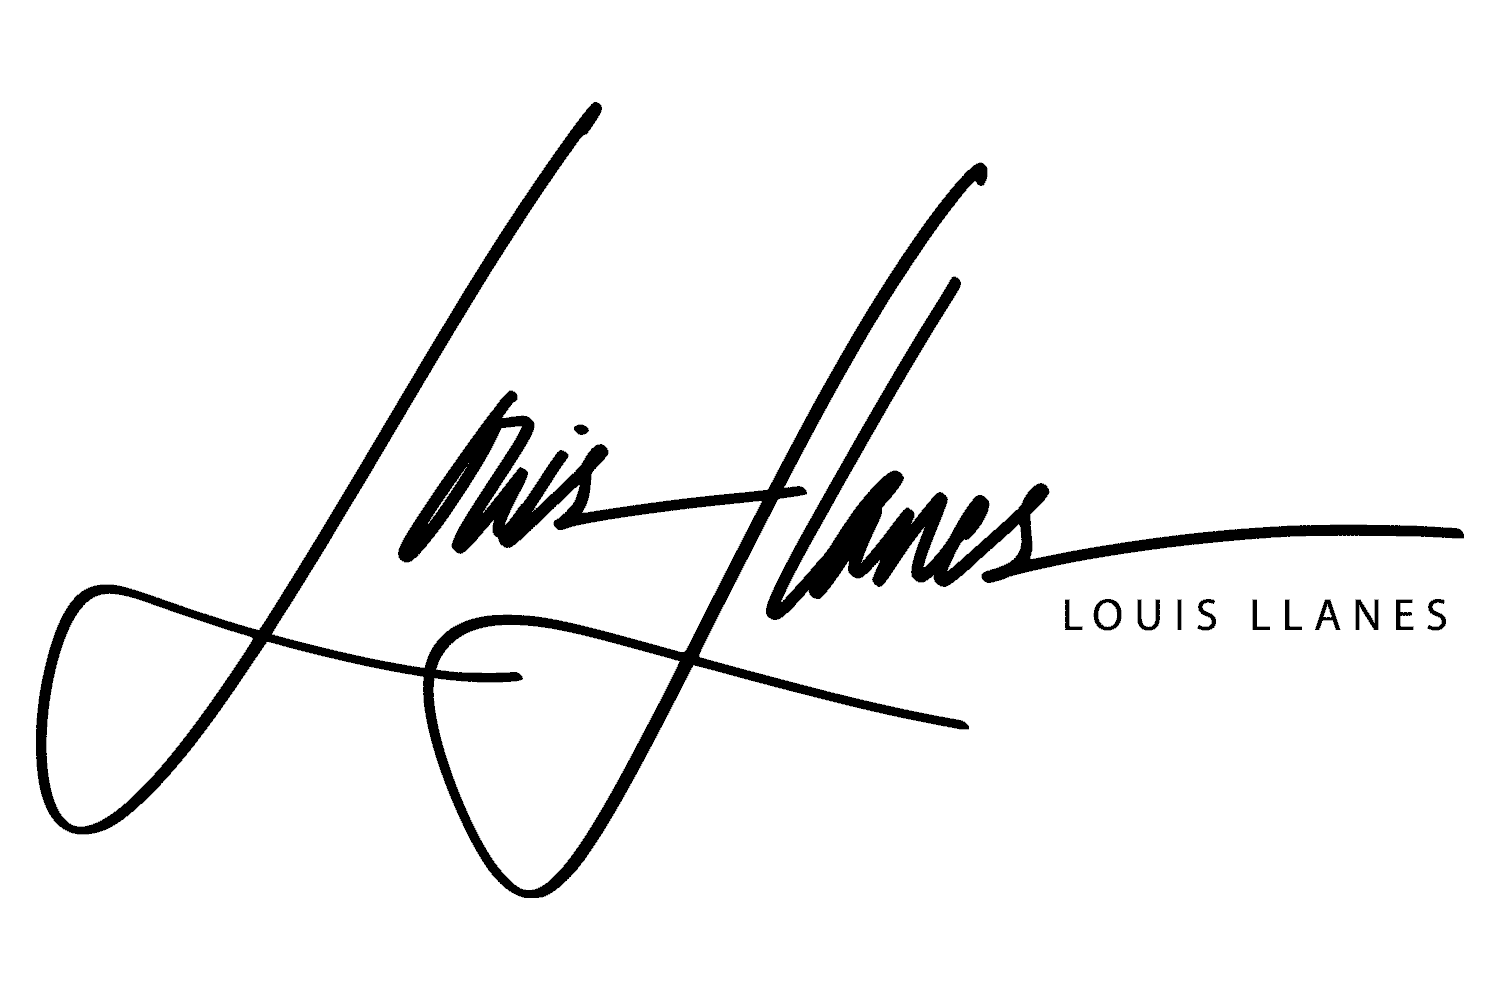 Louis Llanes